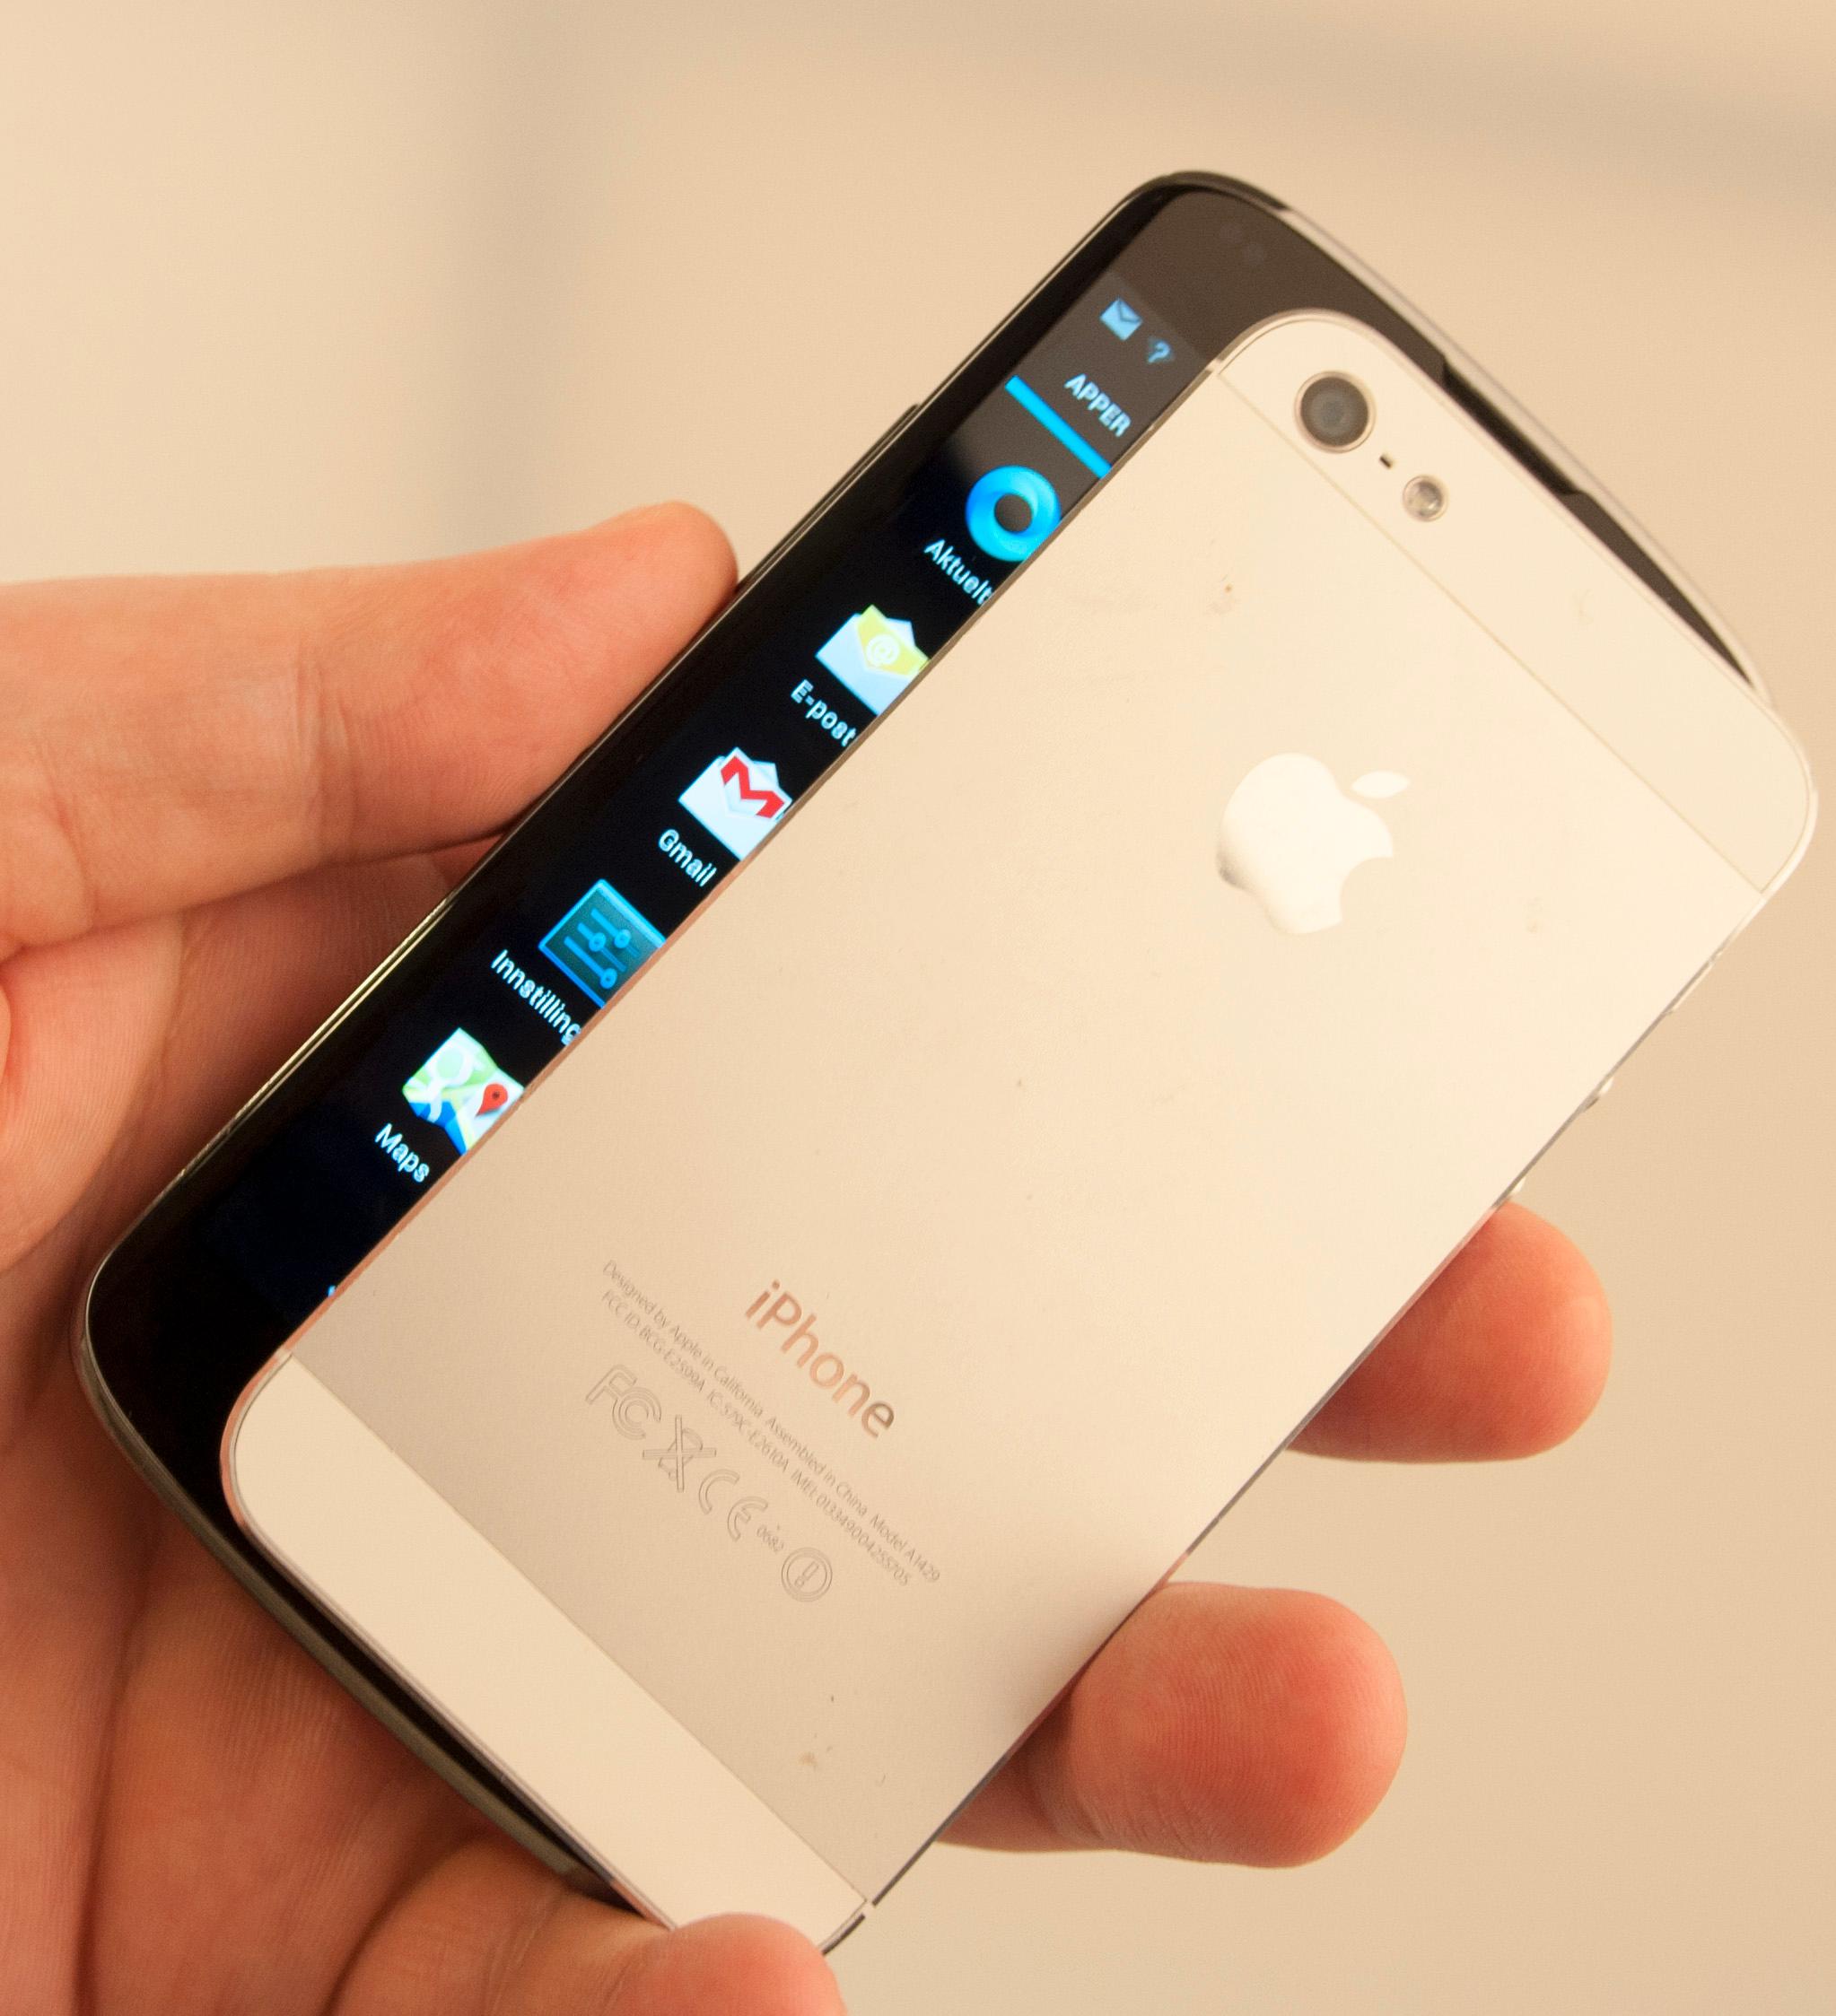 Nexus 4 har en skjerm på 4,7 tommer, men den er likevel ikke uhåndterbar.Foto: Finn Jarle Kvalheim, Amobil.no